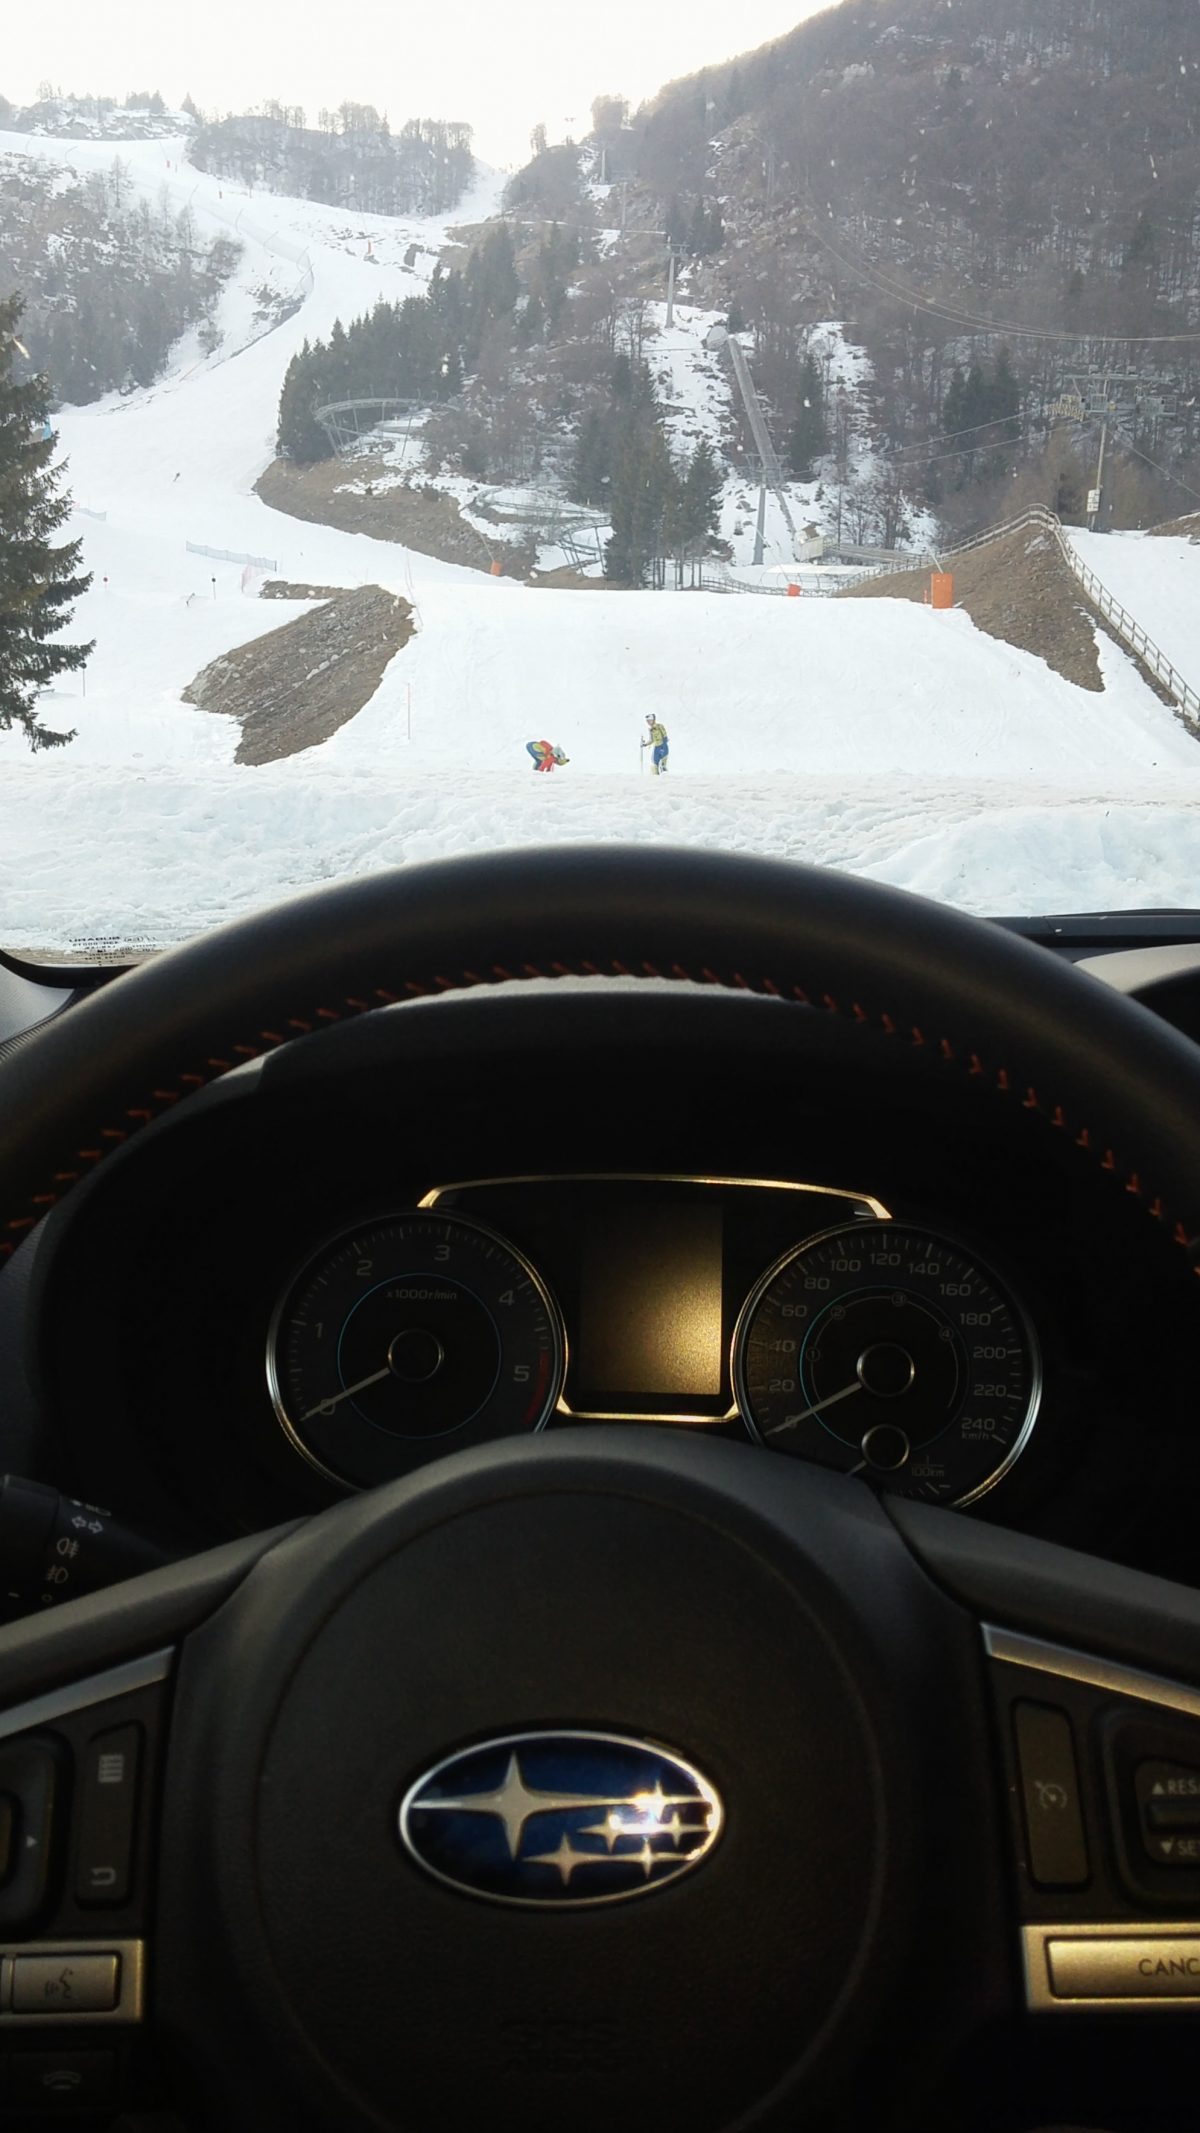 #Subaru XV: cerchiamo il fuoristrada e troviamo la neve #testdrive